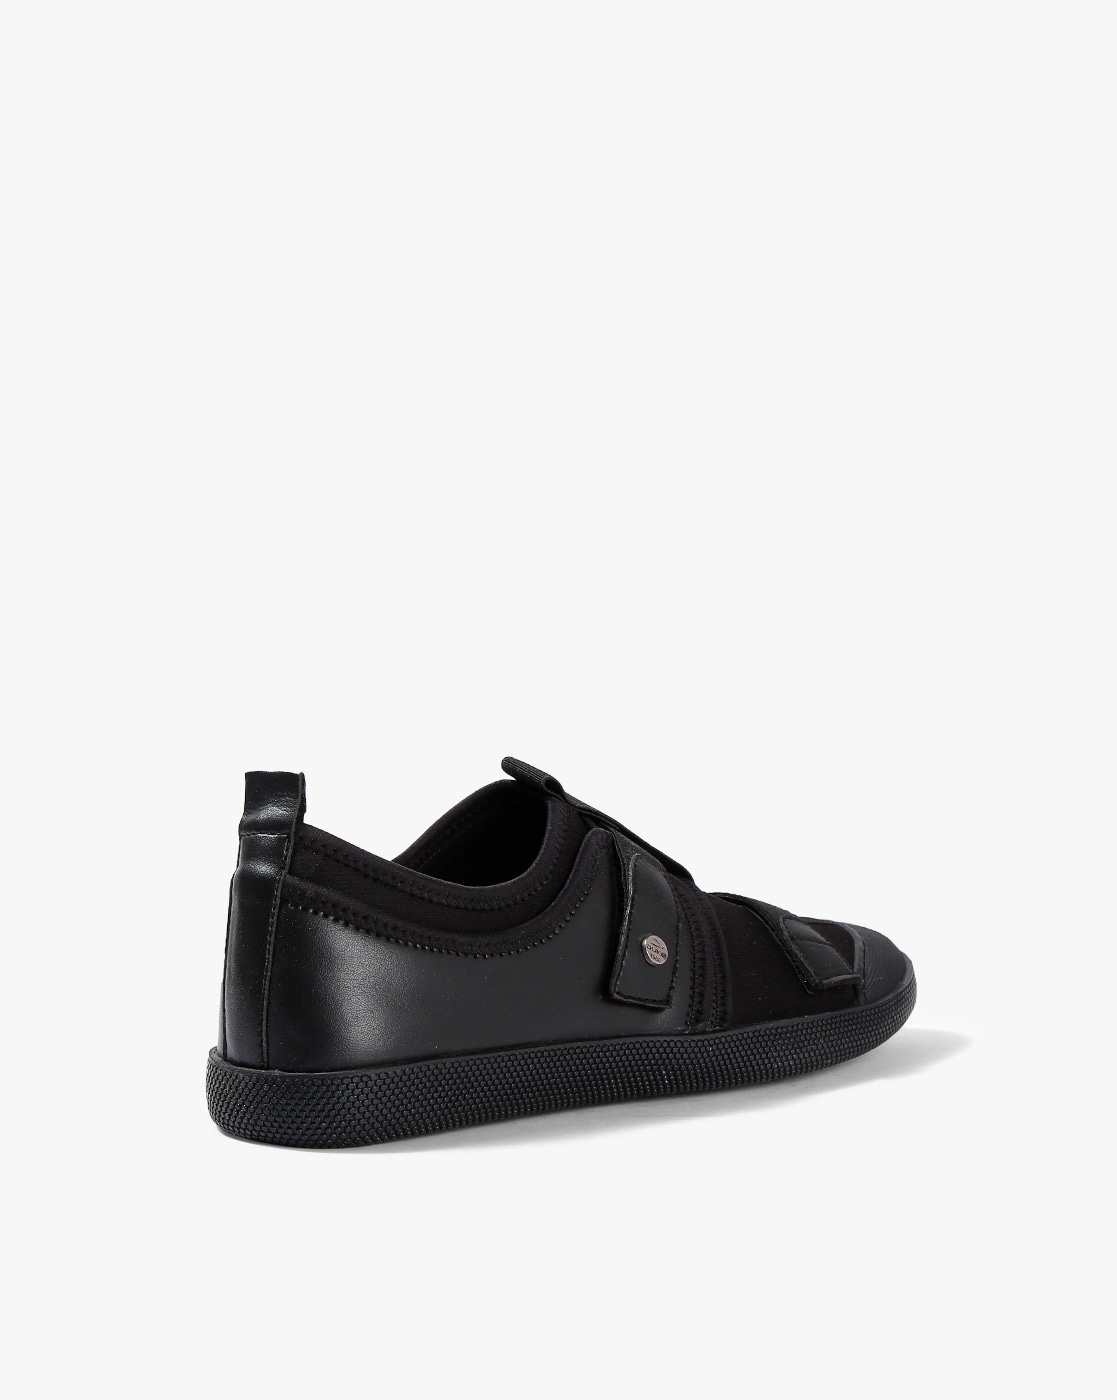 Buy Black Sneakers for Men by DUKE 